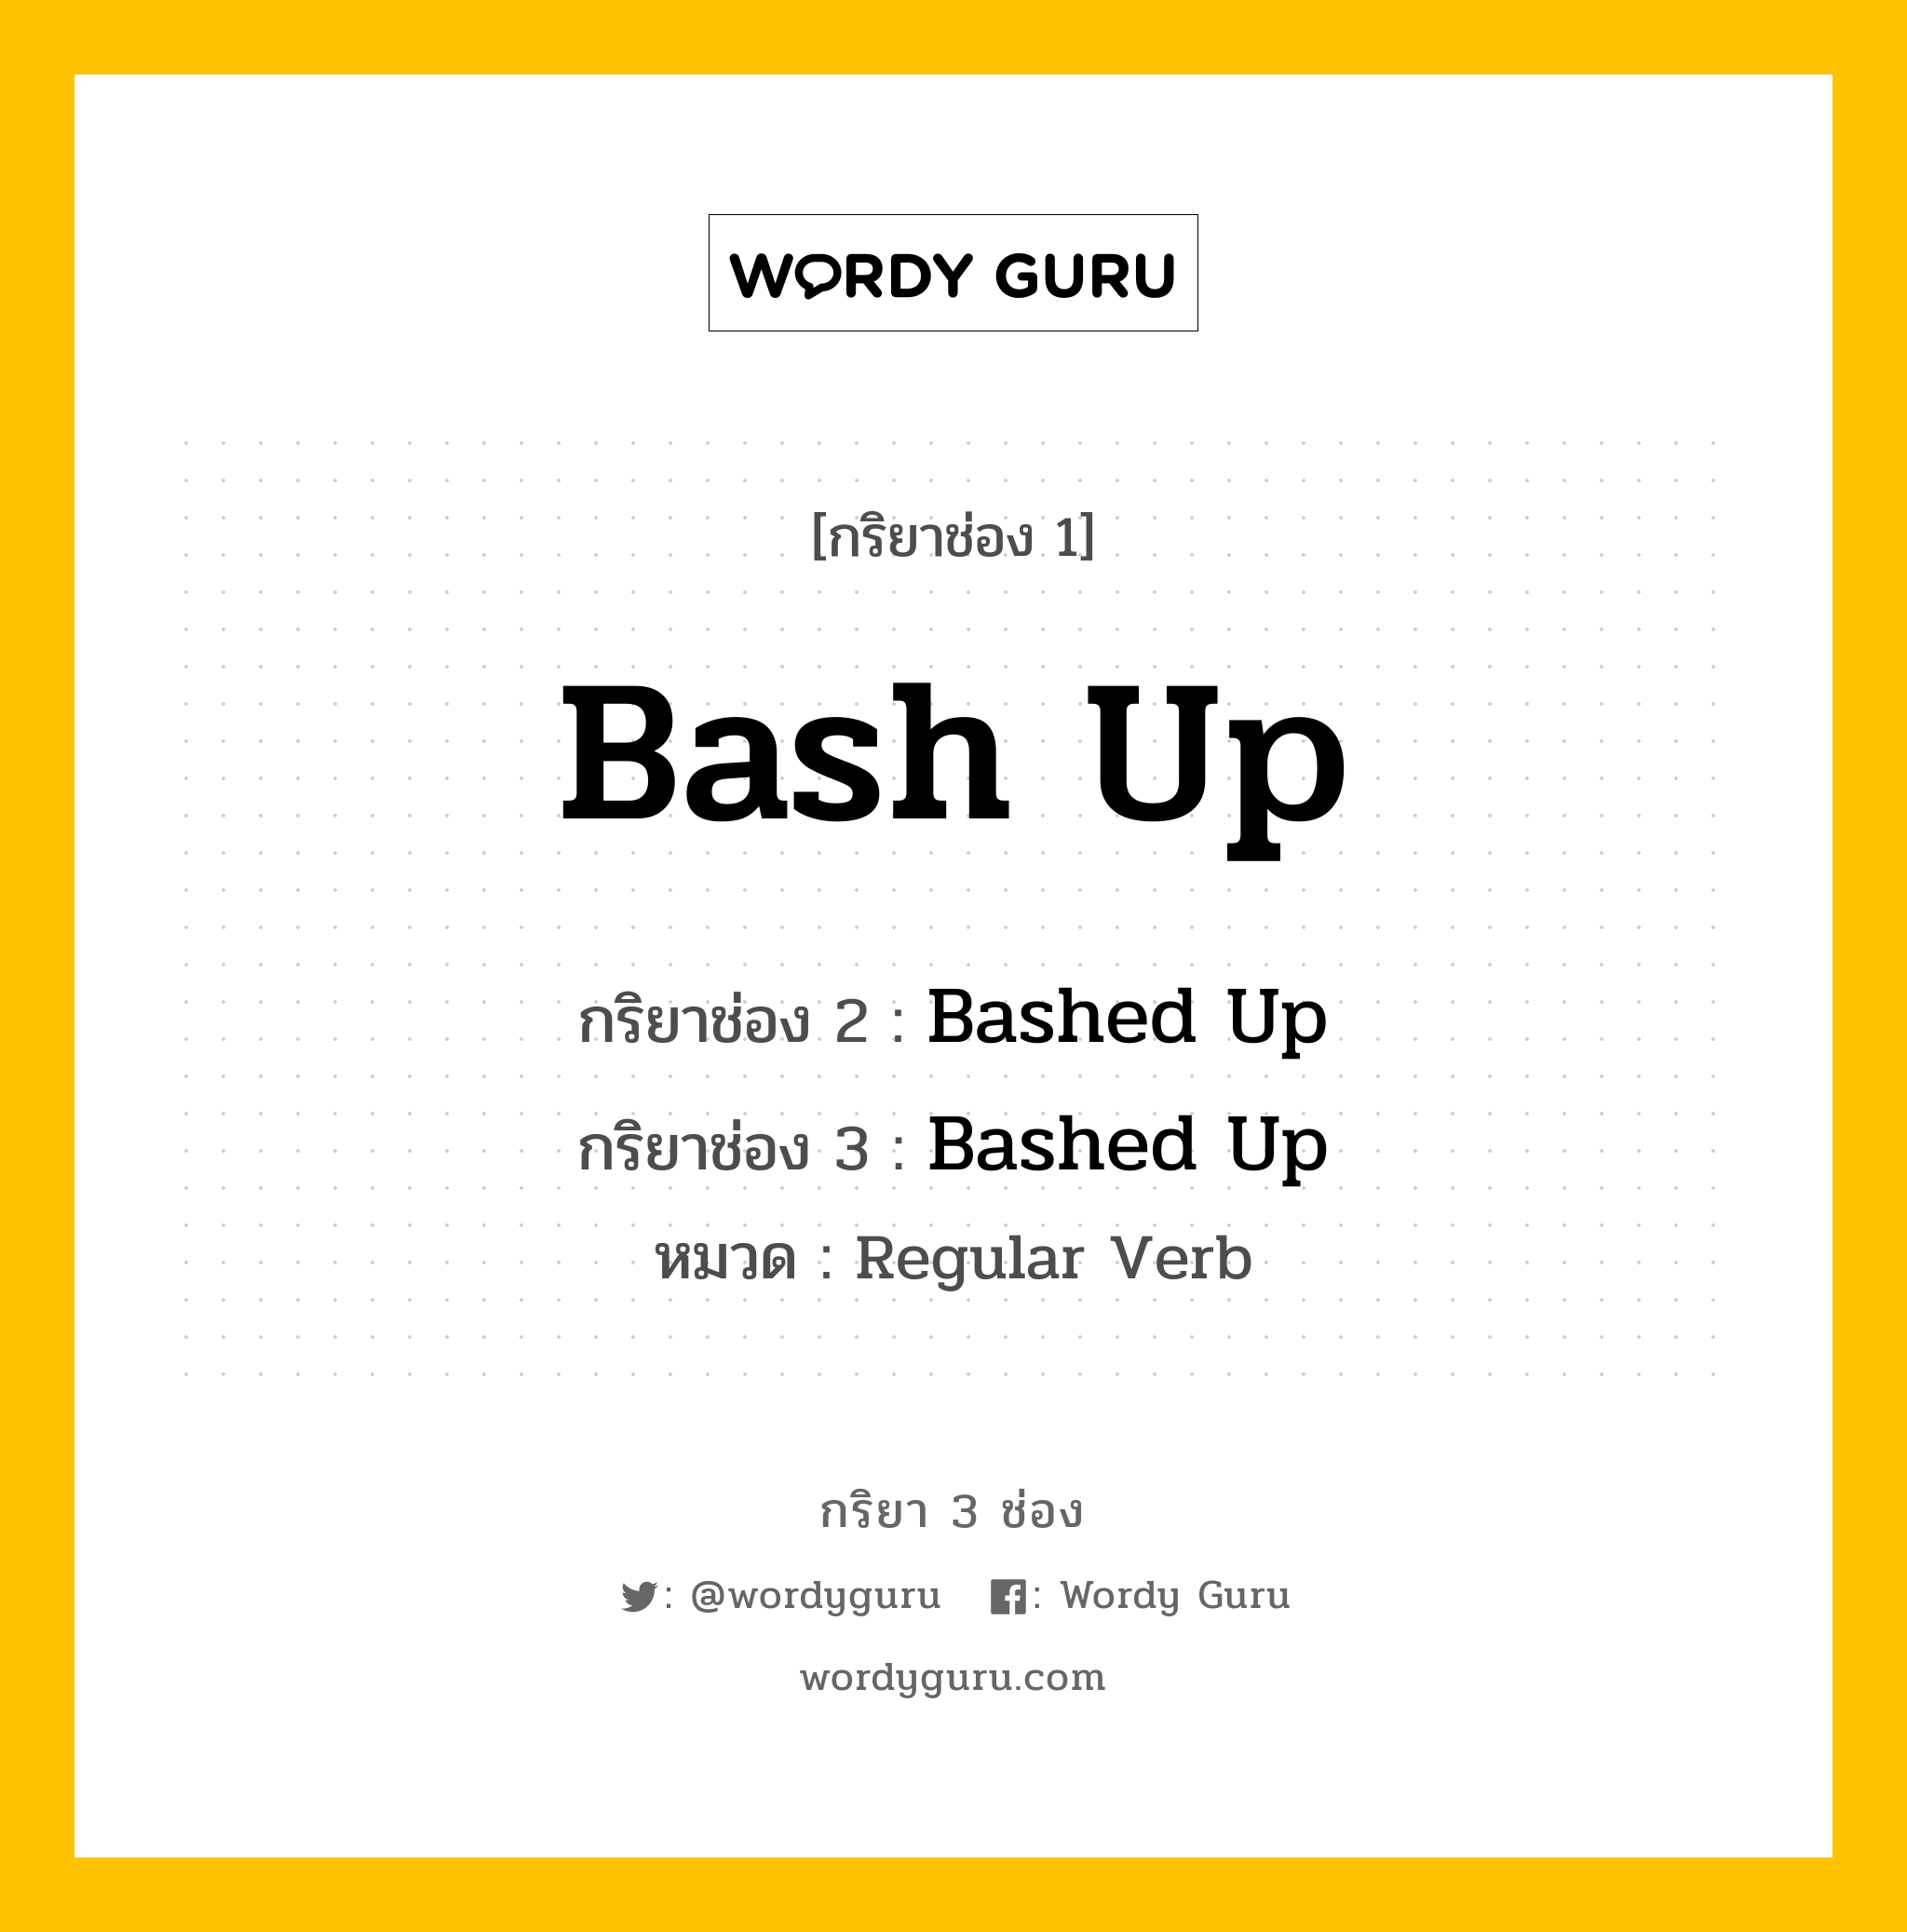 กริยา 3 ช่อง: Bash Up ช่อง 2 Bash Up ช่อง 3 คืออะไร, กริยาช่อง 1 Bash Up กริยาช่อง 2 Bashed Up กริยาช่อง 3 Bashed Up หมวด Regular Verb หมวด Regular Verb